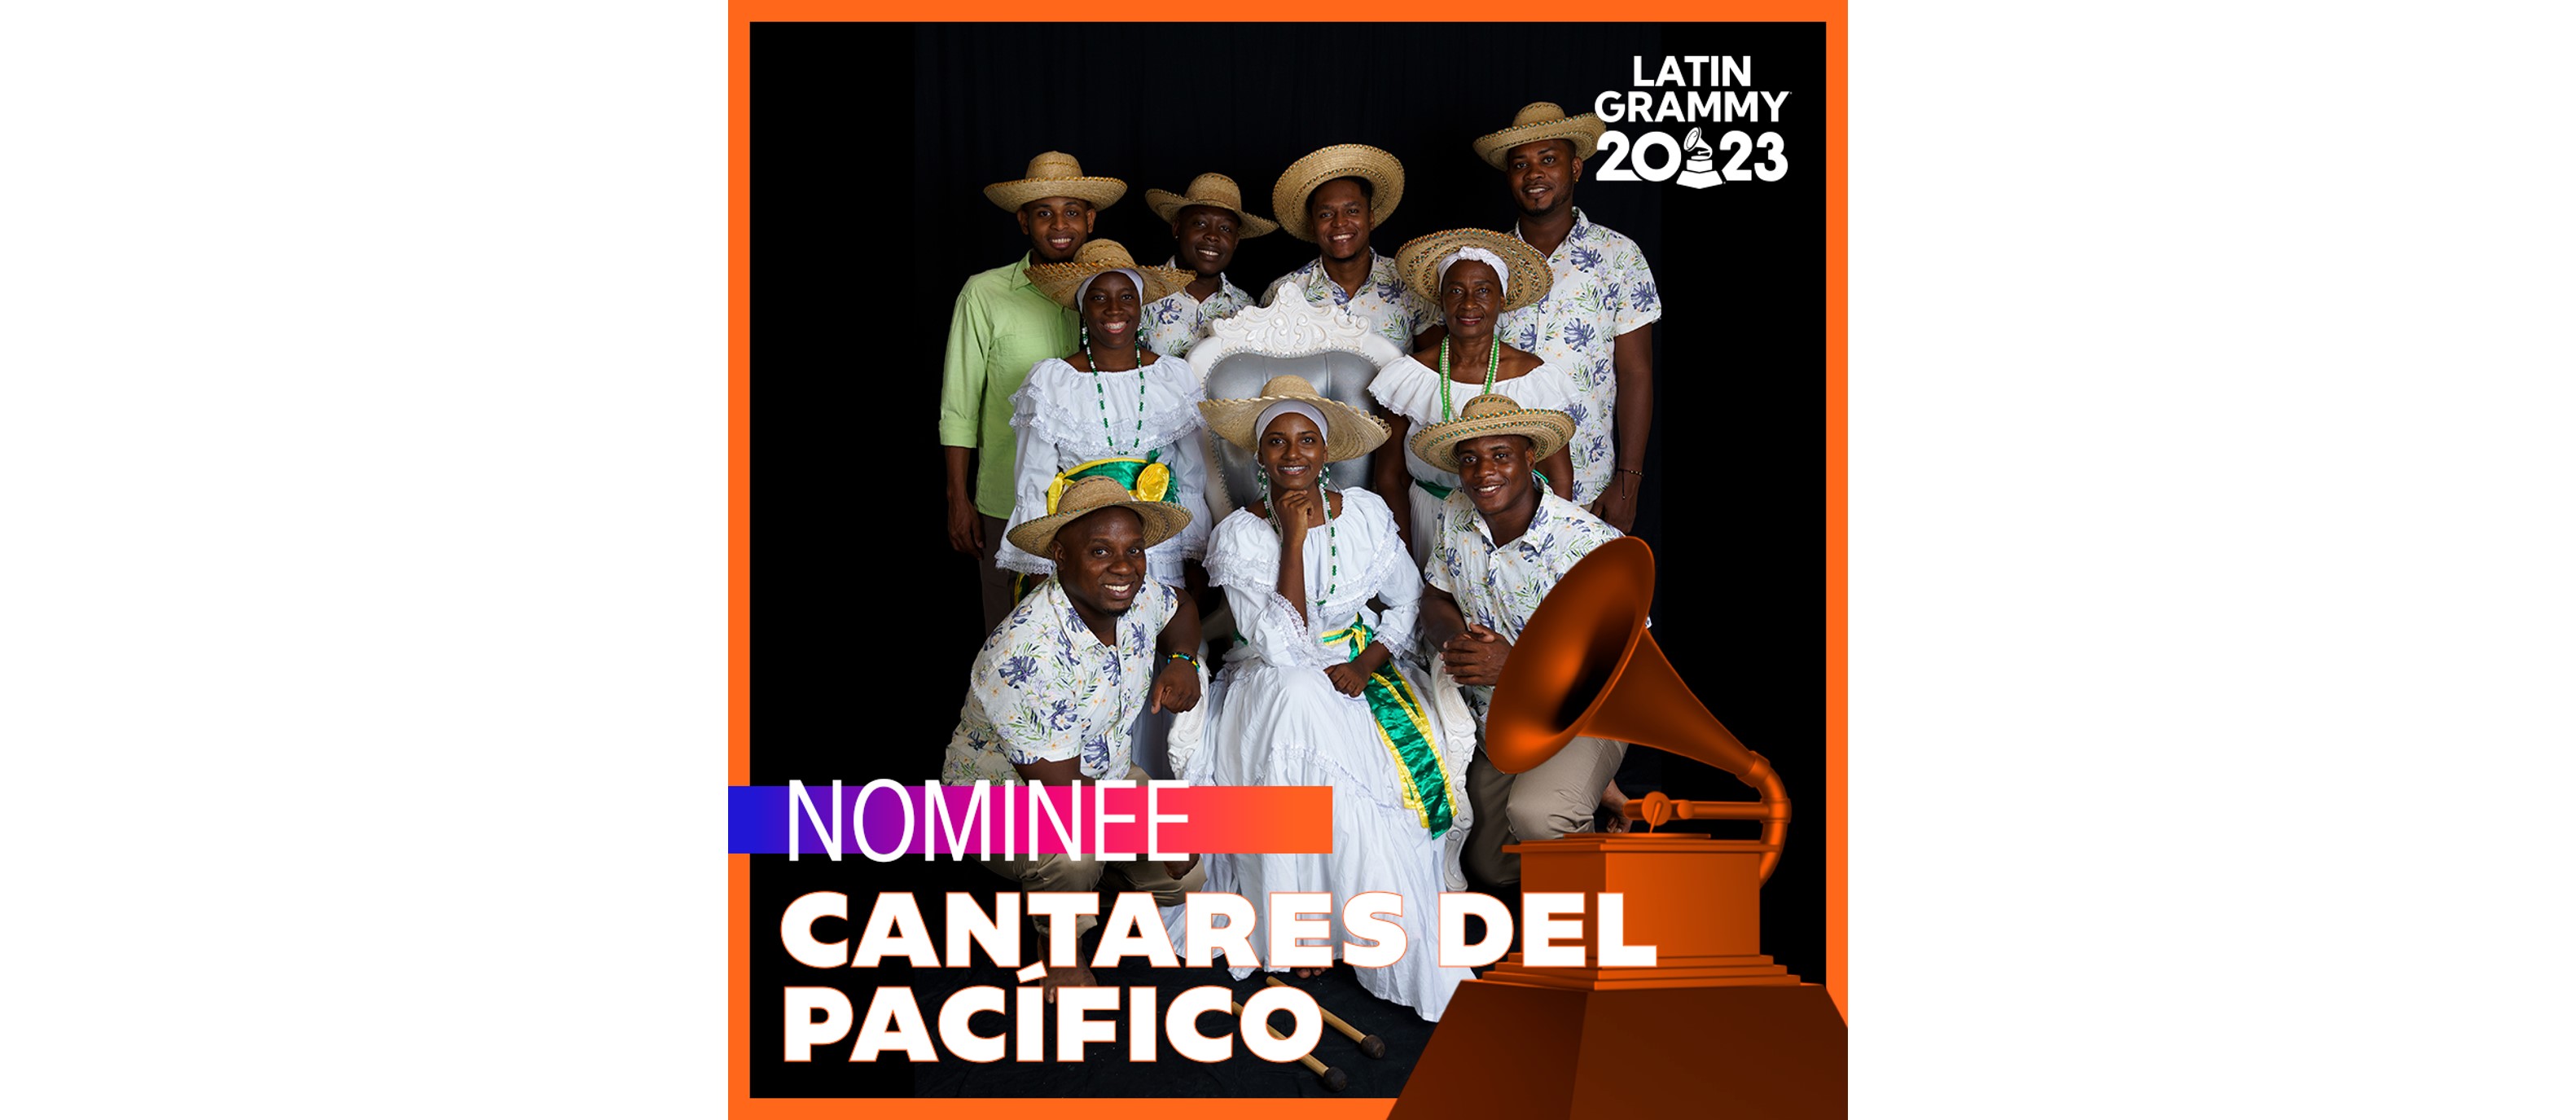 Cantares del Pacífico, participante en la Iniciativa de Diplomacia Cultural y Deportiva de la Dirección de Asuntos Culturales del Ministerio de Relaciones Exteriores, es nominado al Latin Grammy 2023